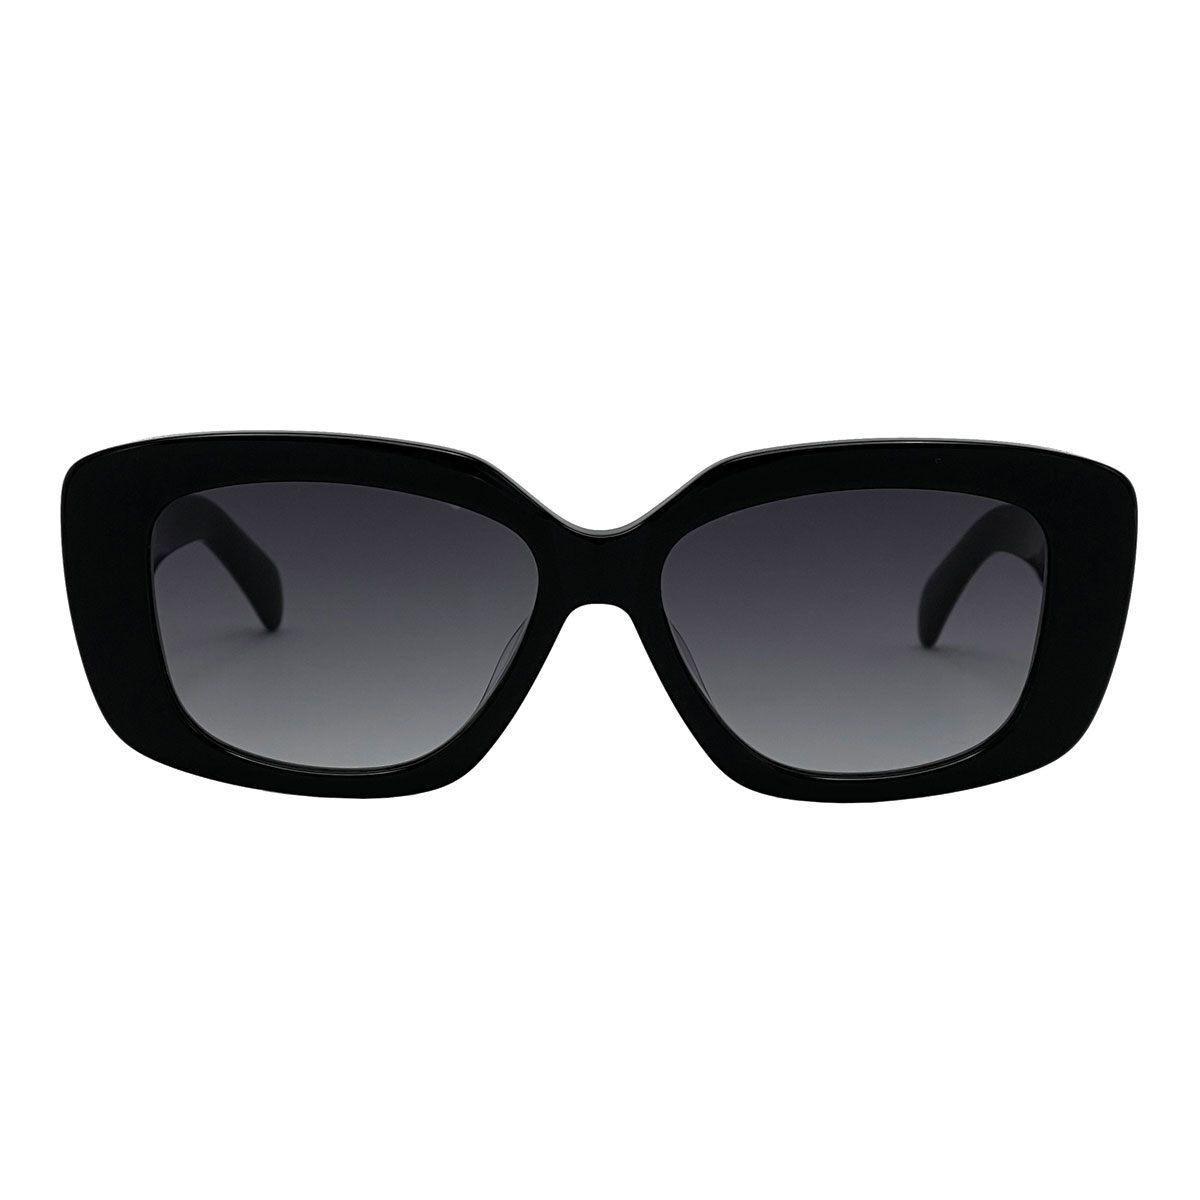 عینک آفتابی زنانه سلین مدل CL4S216U - 5201A